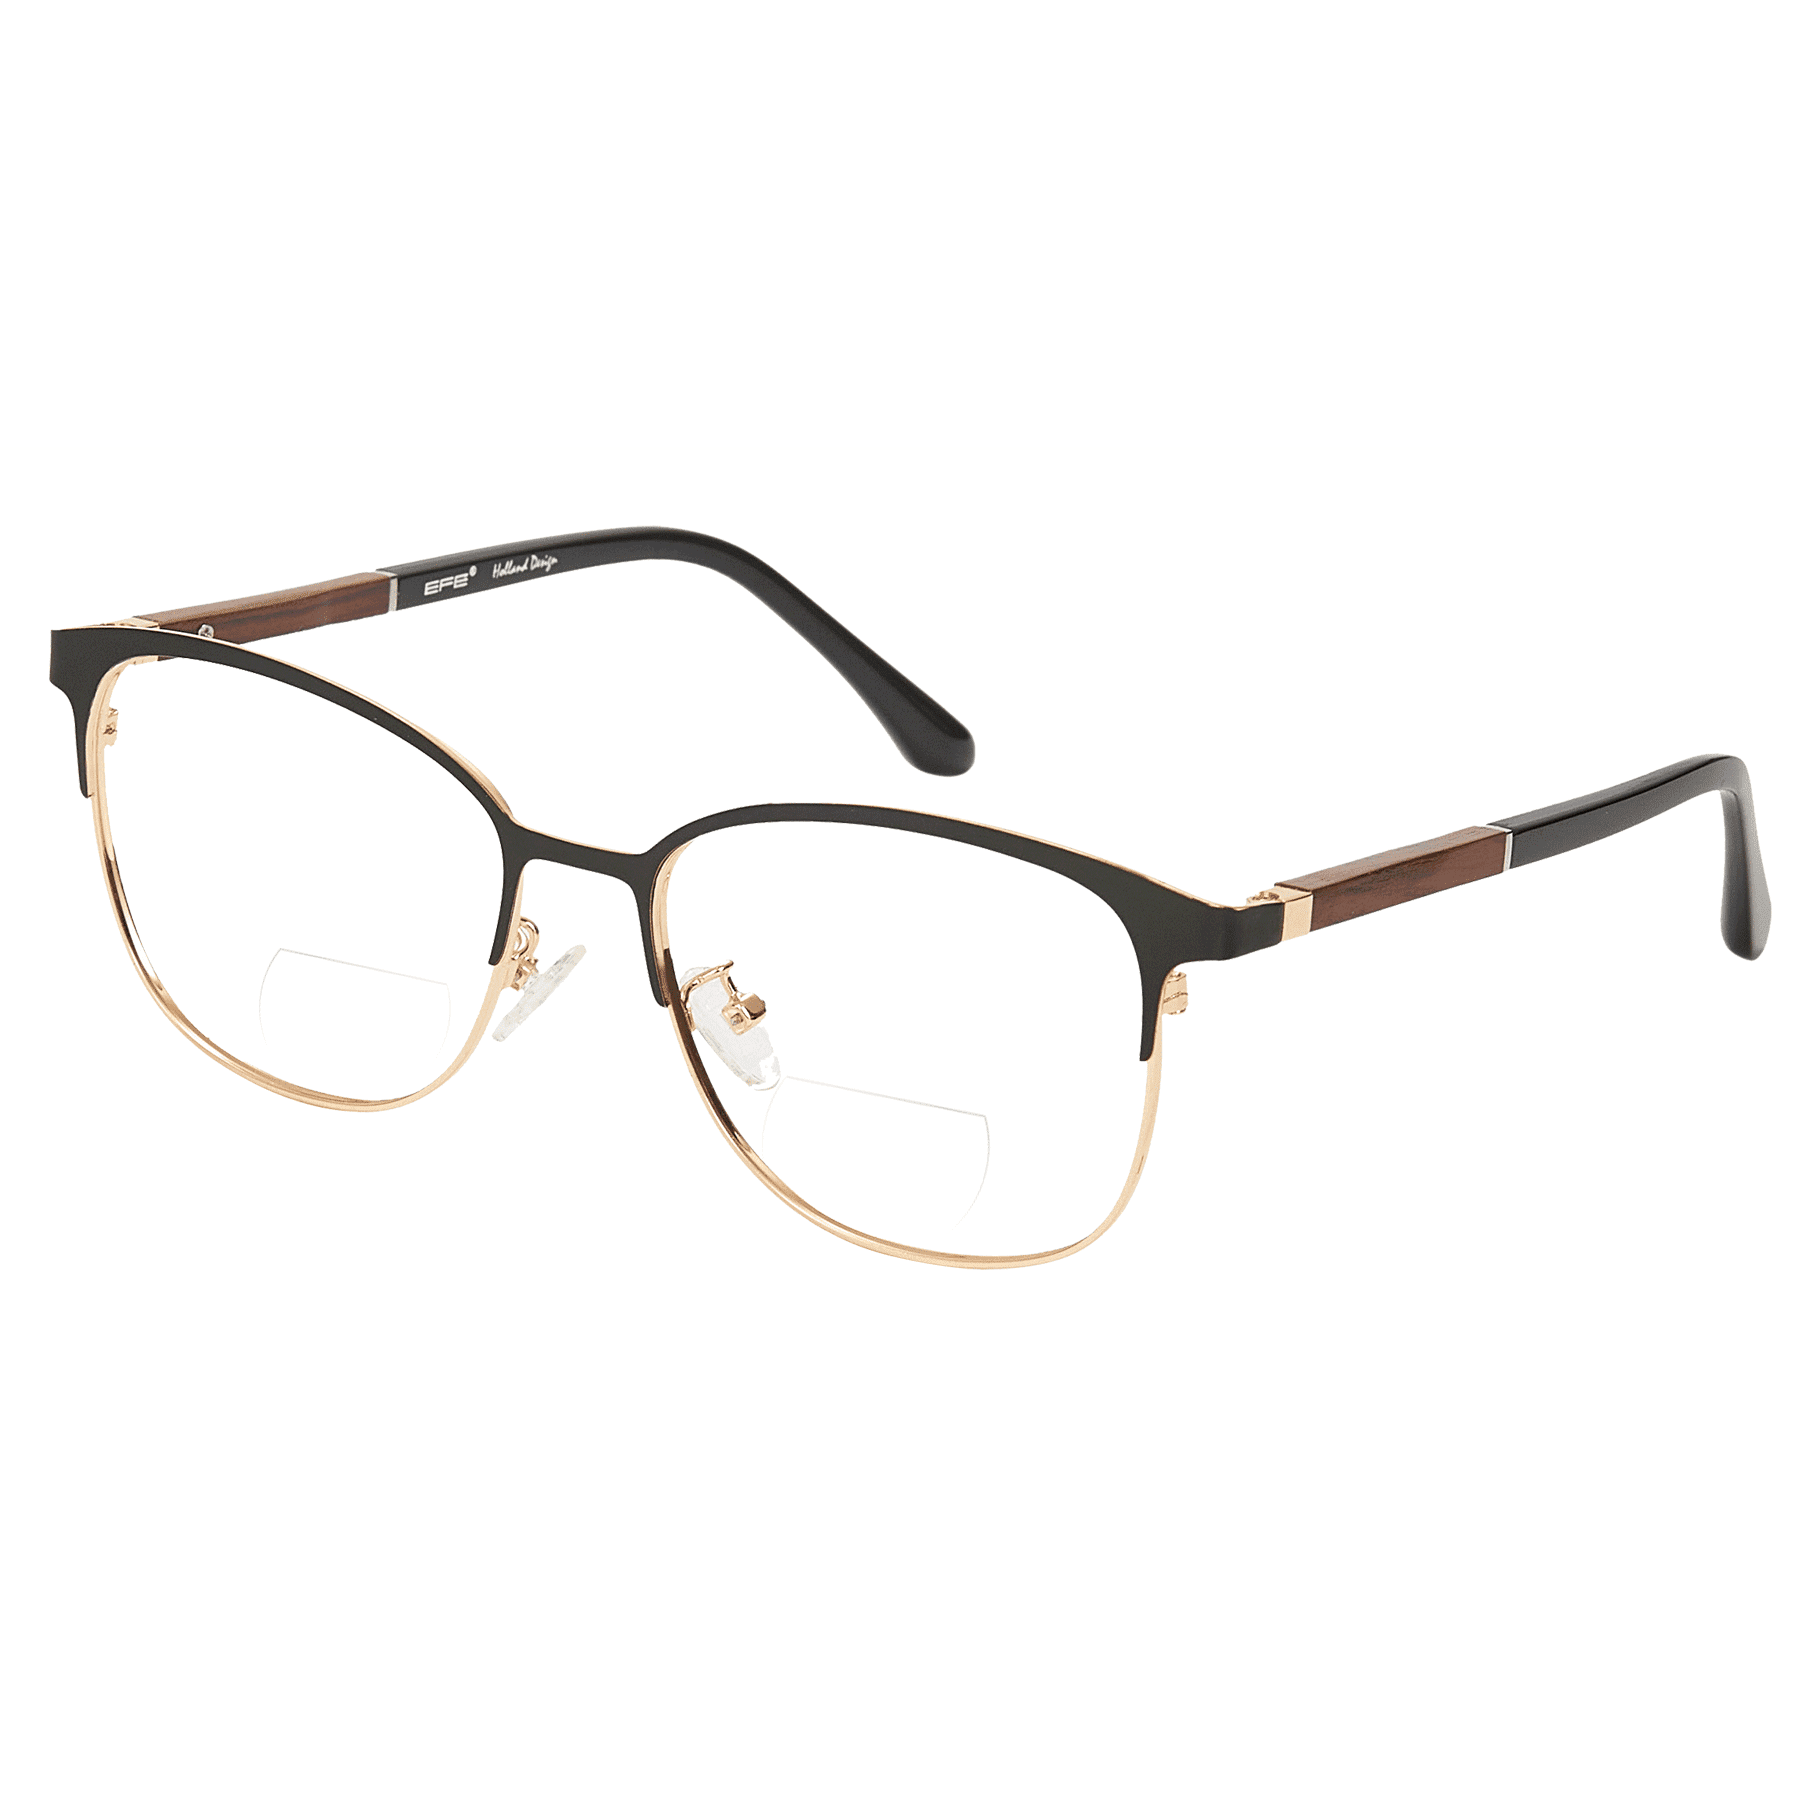 Hypnus - Square Black-Gold Reading Glasses for Men